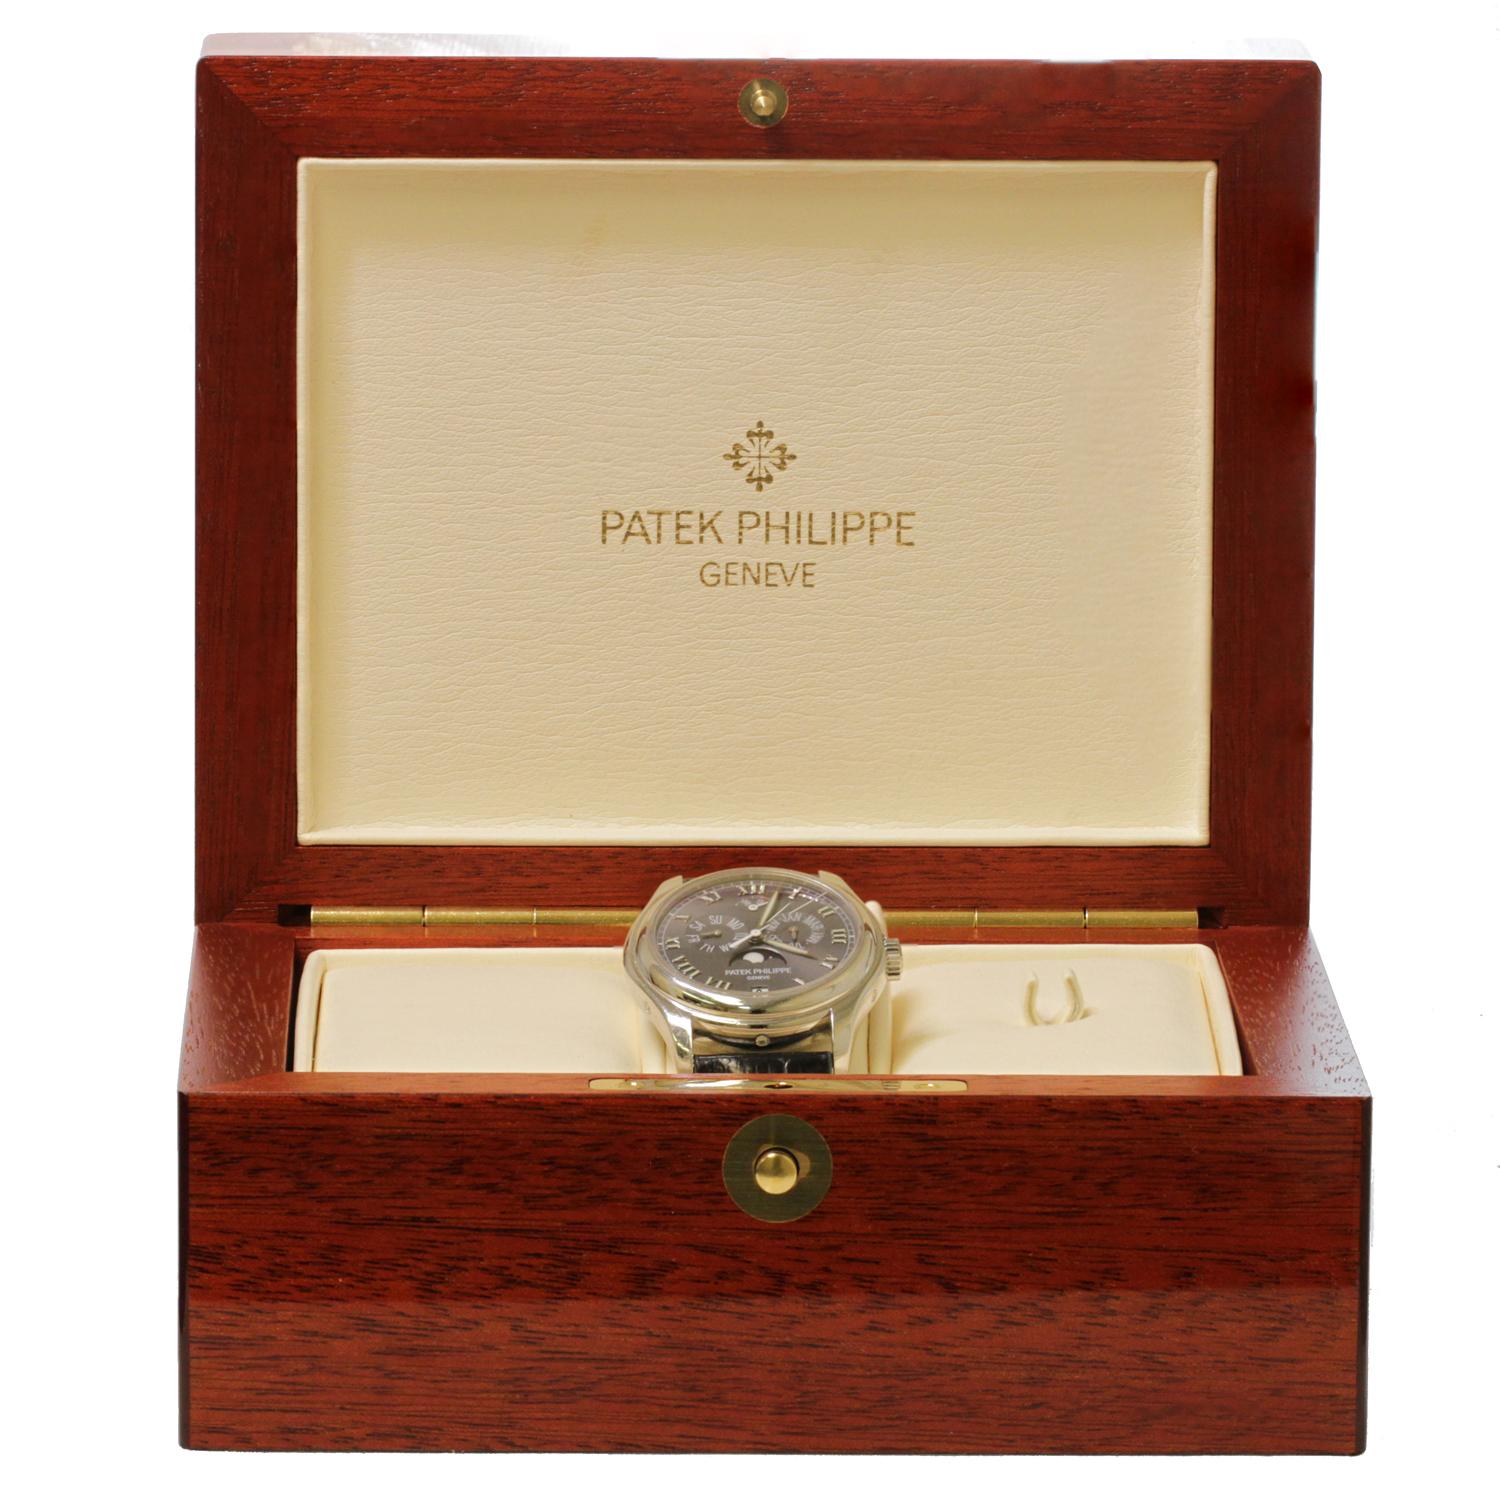 Cette fantastique montre-bracelet Patek Philippe Ref. 5056P présente un beau boîtier en platine avec verre saphir, un cadran gris avec chiffres romains et aiguilles lumineuses, un calendrier annuel, un sous-cadran jour à 10 heures, un affichage de